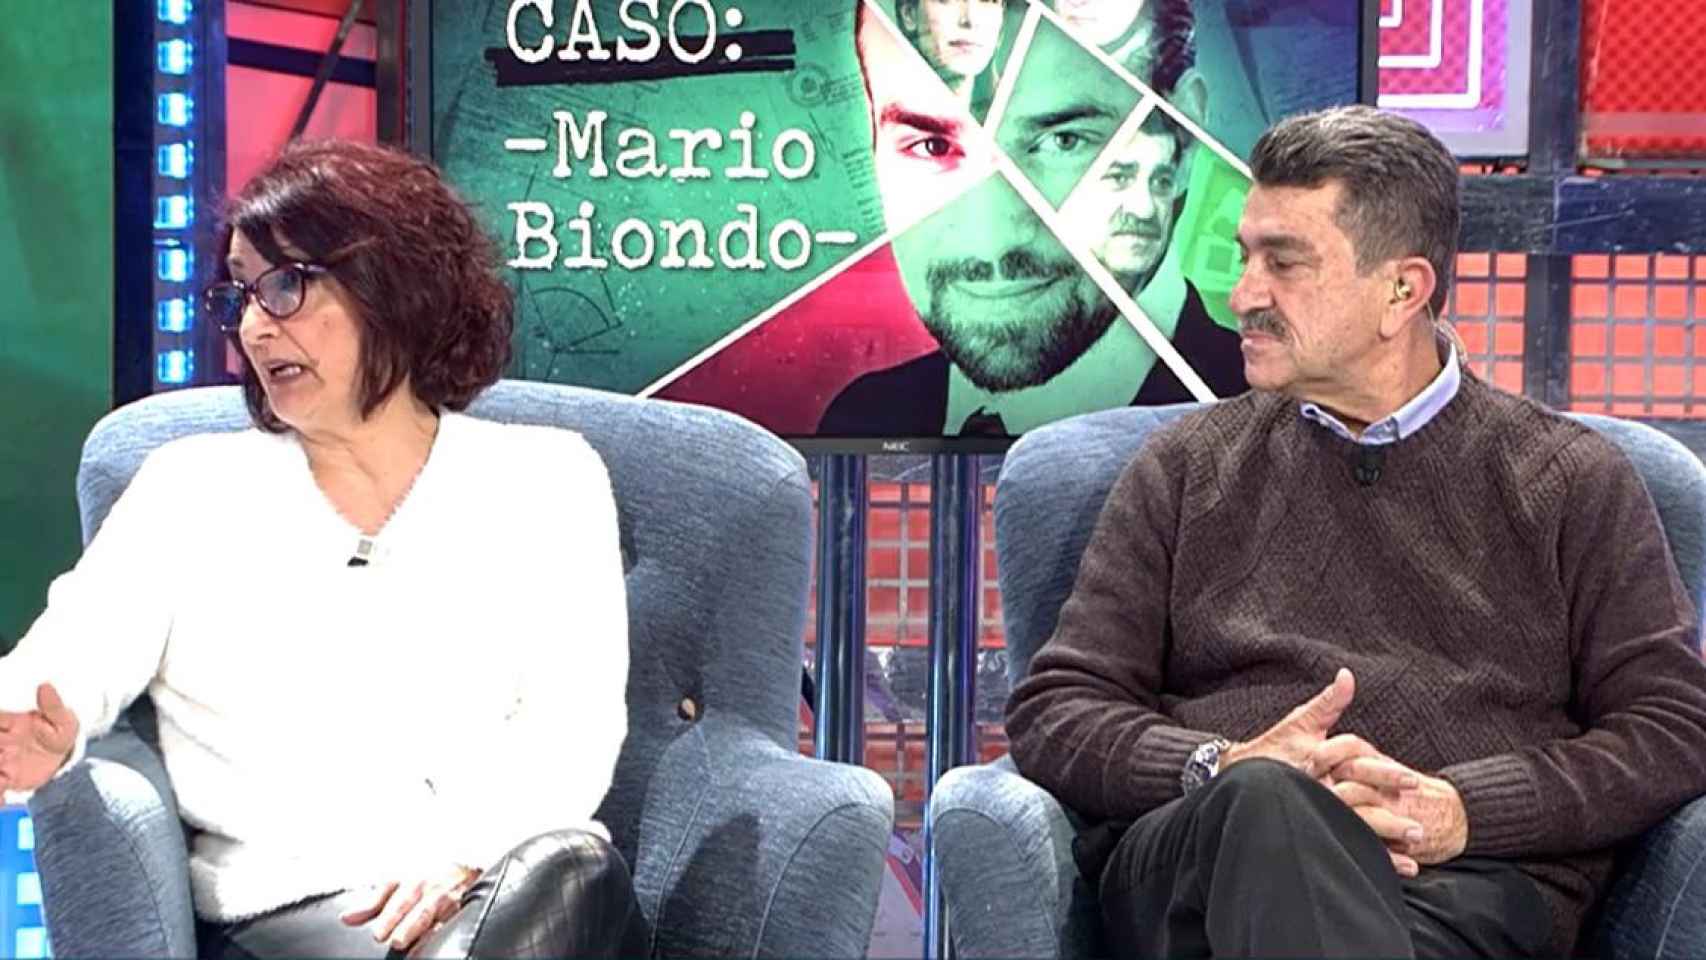 Santina D'Alessandra y Giusseppe Biondo, padres de Mario Biondo, se sienta por primera vez en un plató de televisión en España /TELECINCO